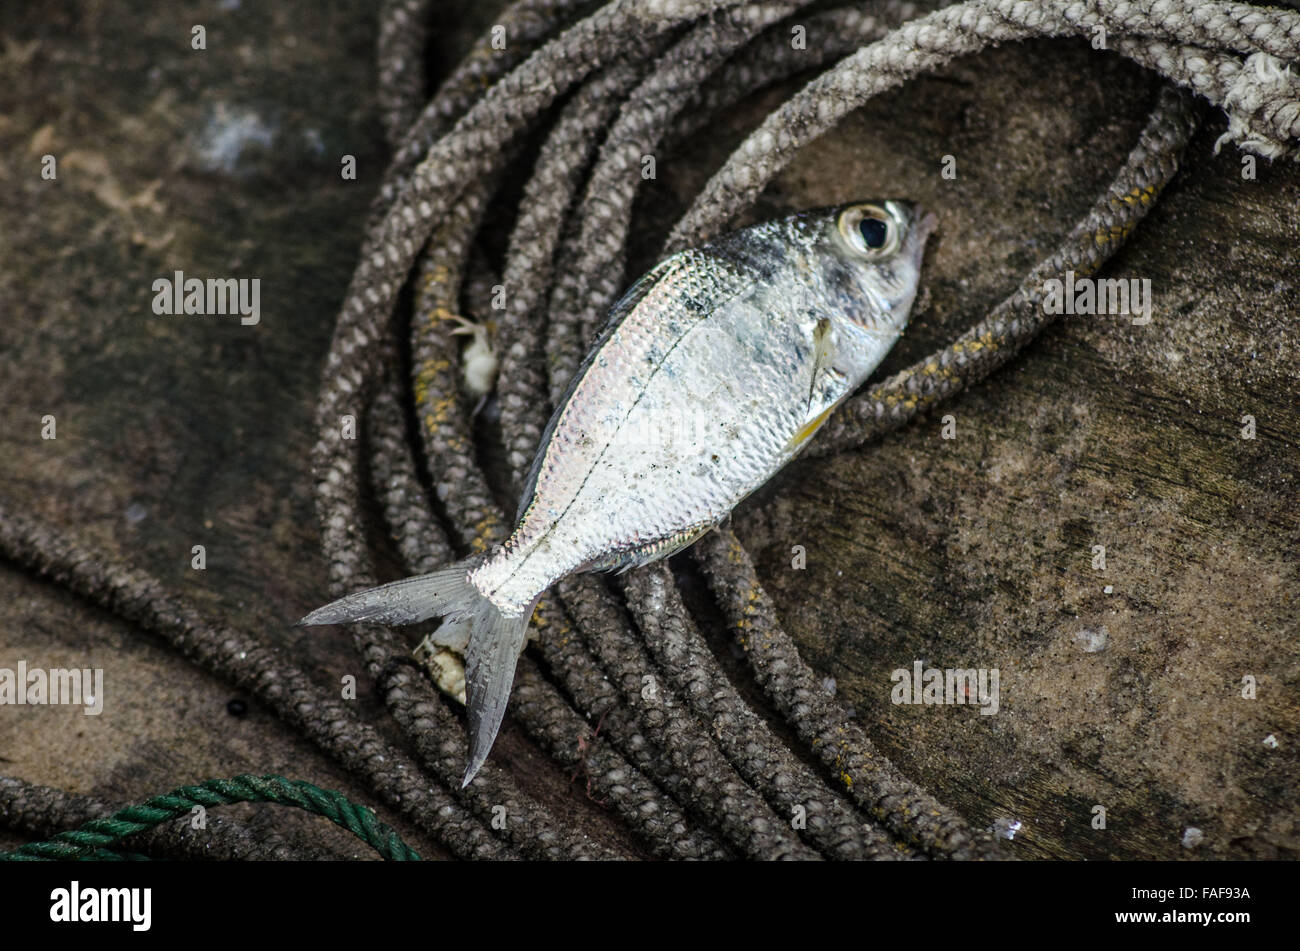 La pêche artisanale, de la sierra leone Banque D'Images